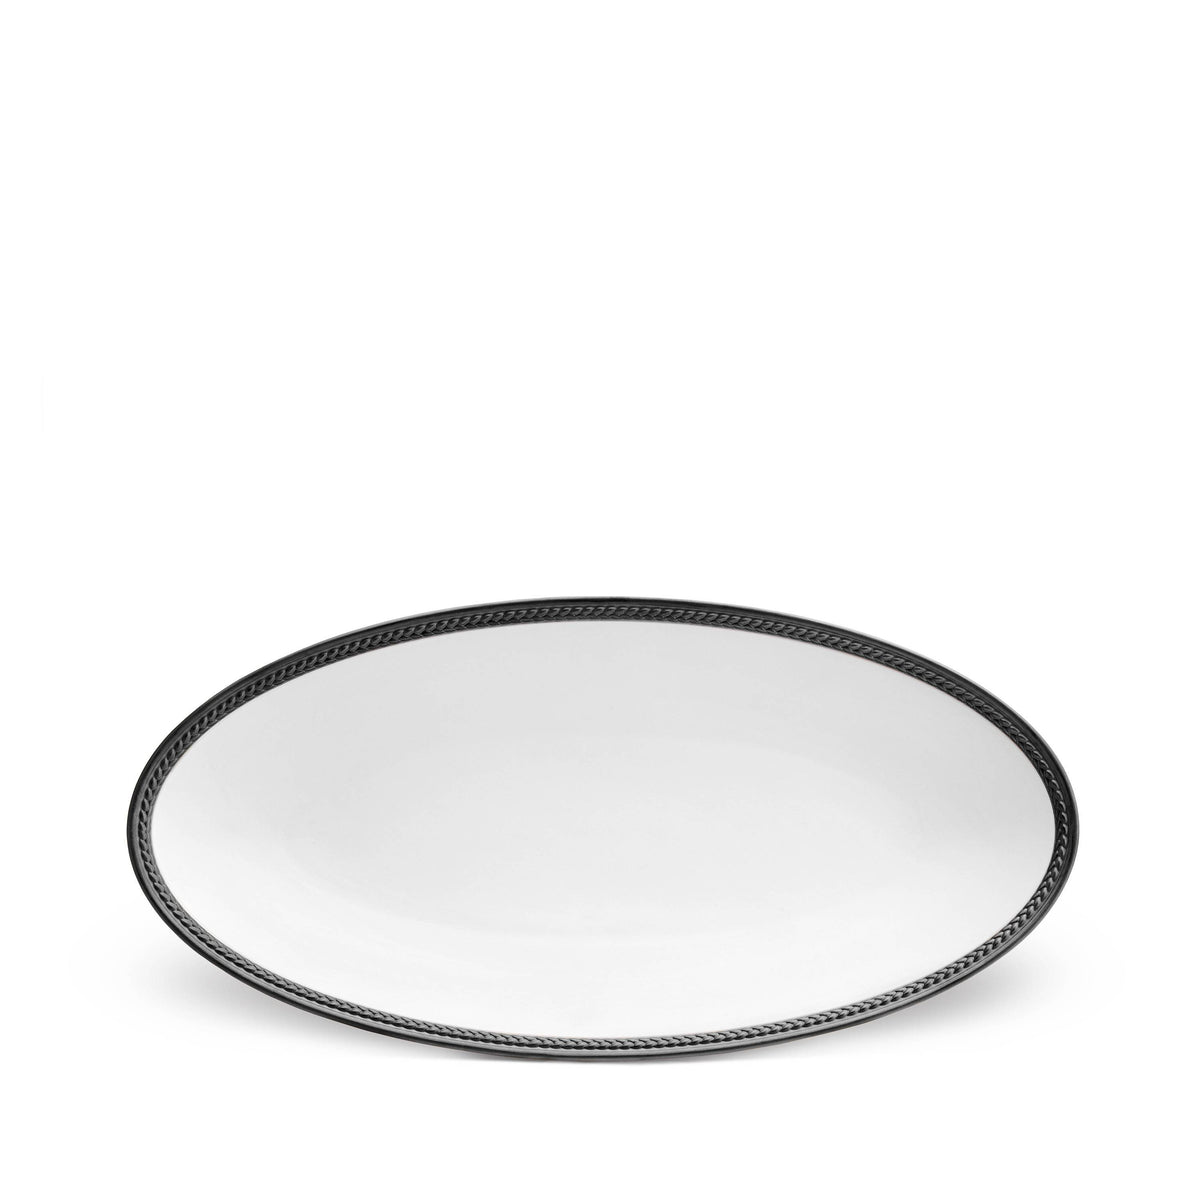 Soie Tress̩e Small Oval Platter